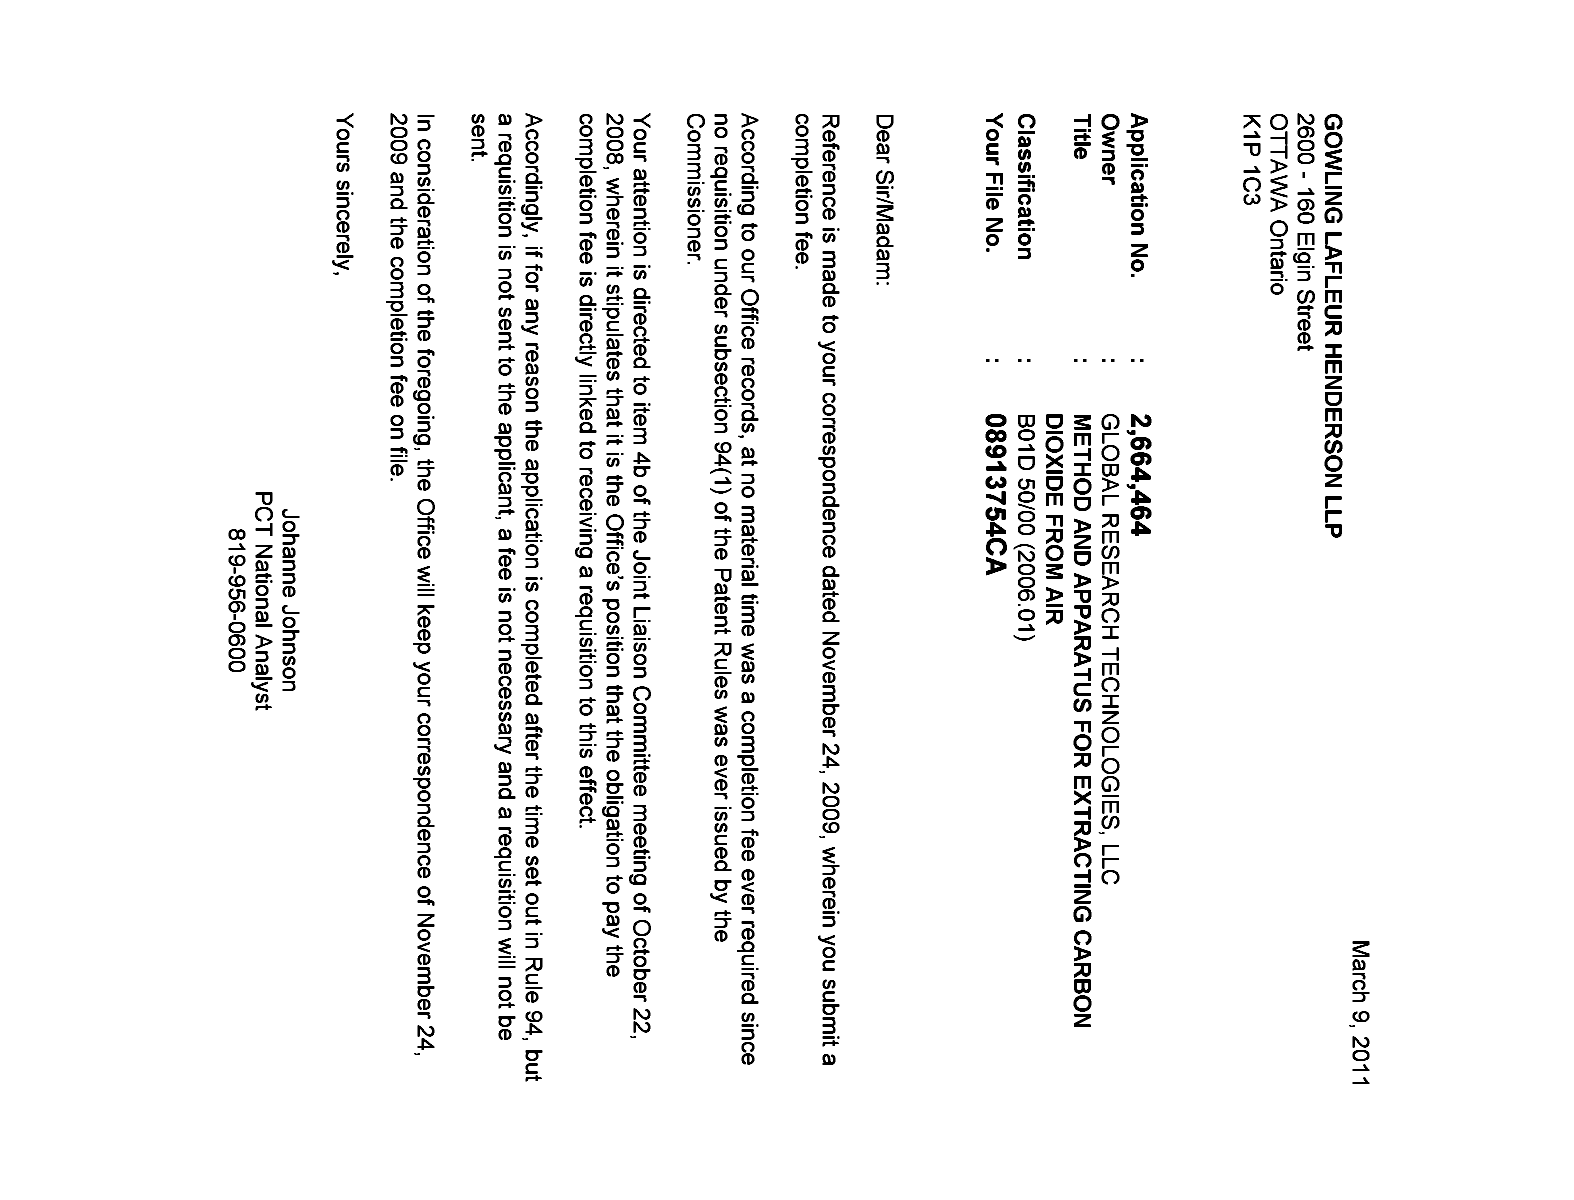 Document de brevet canadien 2664464. Correspondance 20110309. Image 1 de 1